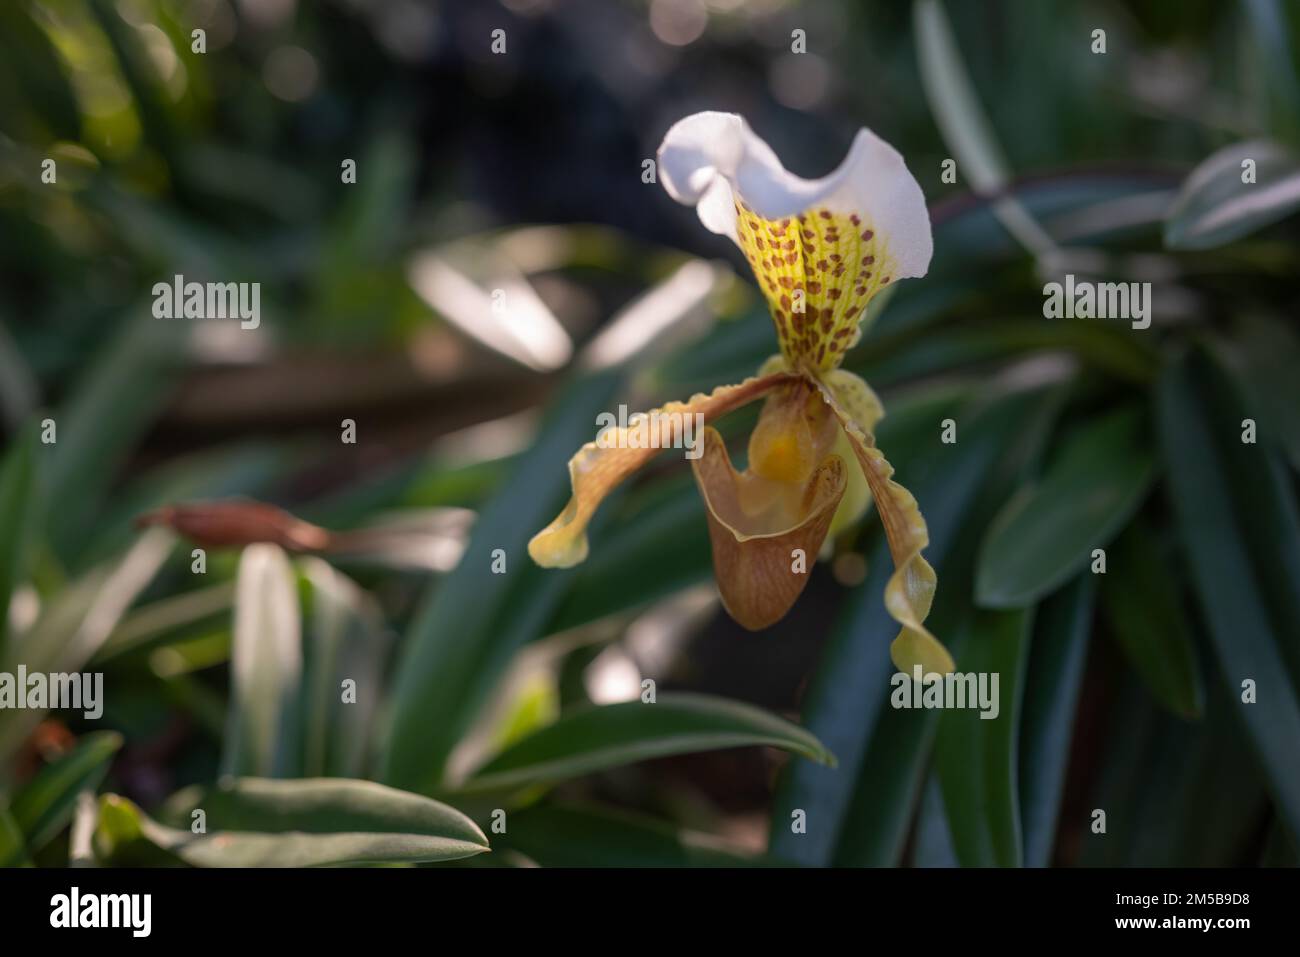 Weiße und gelbe Blüten von prächtigem Paphiopedilum oder Pantoffelorchidee auf grünem Bokeh-Hintergrund. Paphiopedilum Leeanum gepunktete Blütenblätter. Winterorc Stockfoto